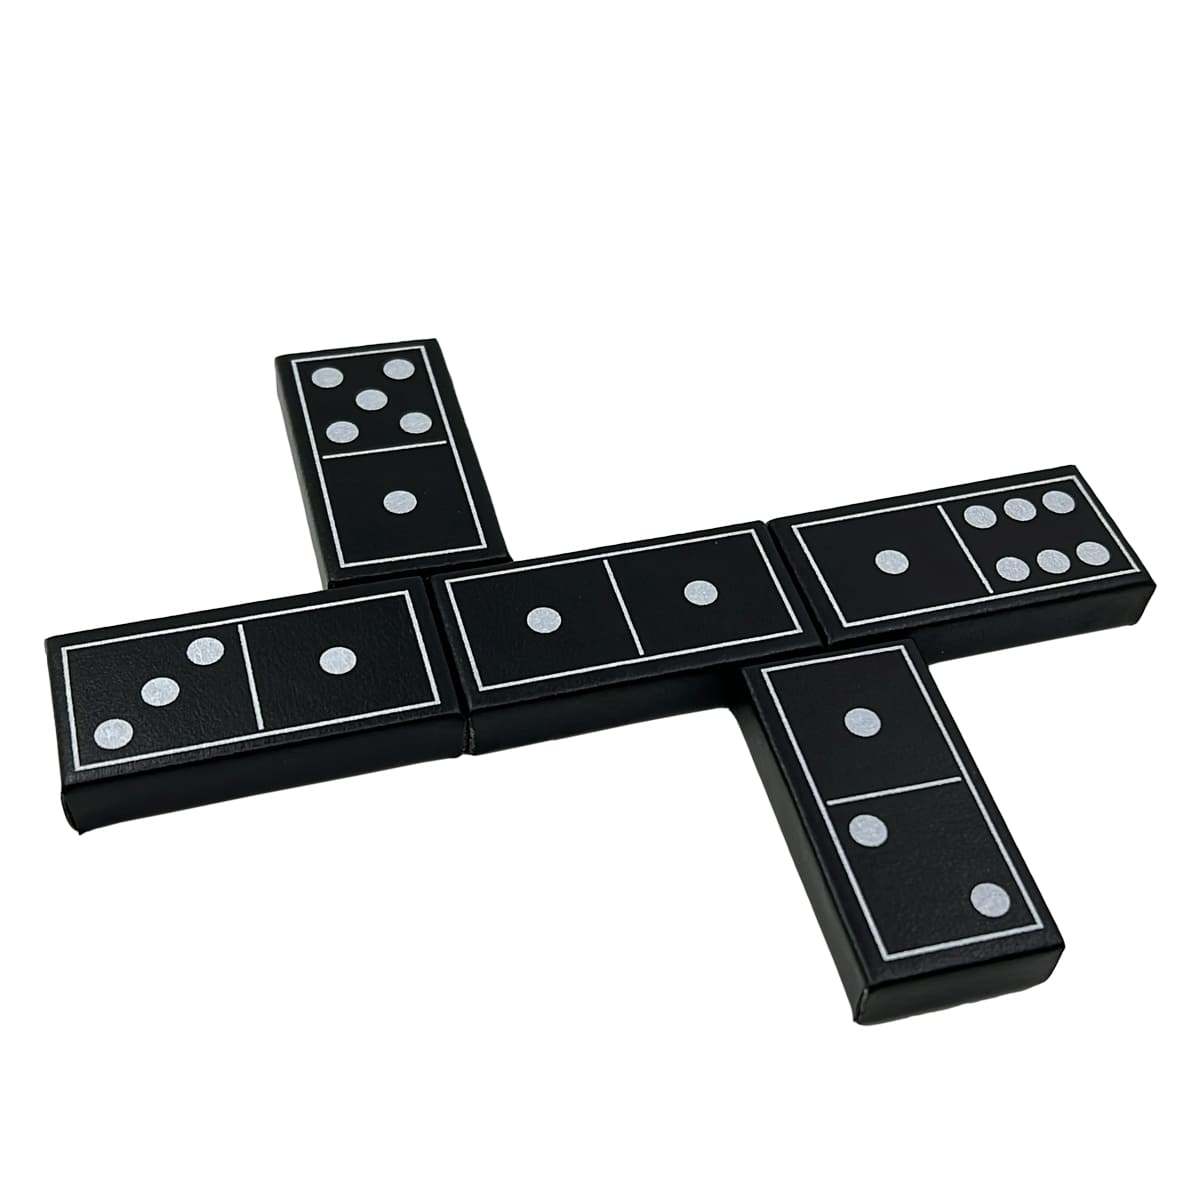 Juegos de dominó de lujo Doble seis estándar 28 fichas con estuche de cuero negro